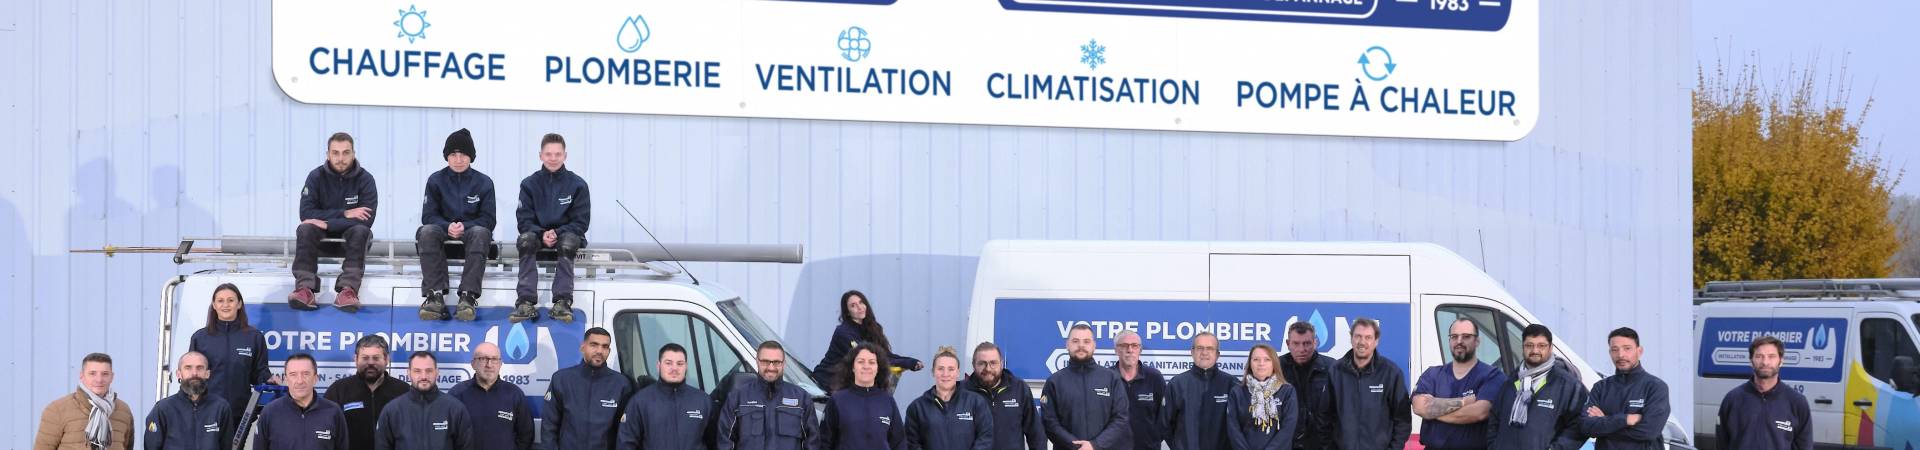 Chauffage, Plomberie, Ventilation et Climatisation à Chartres | Gaz Dépannage